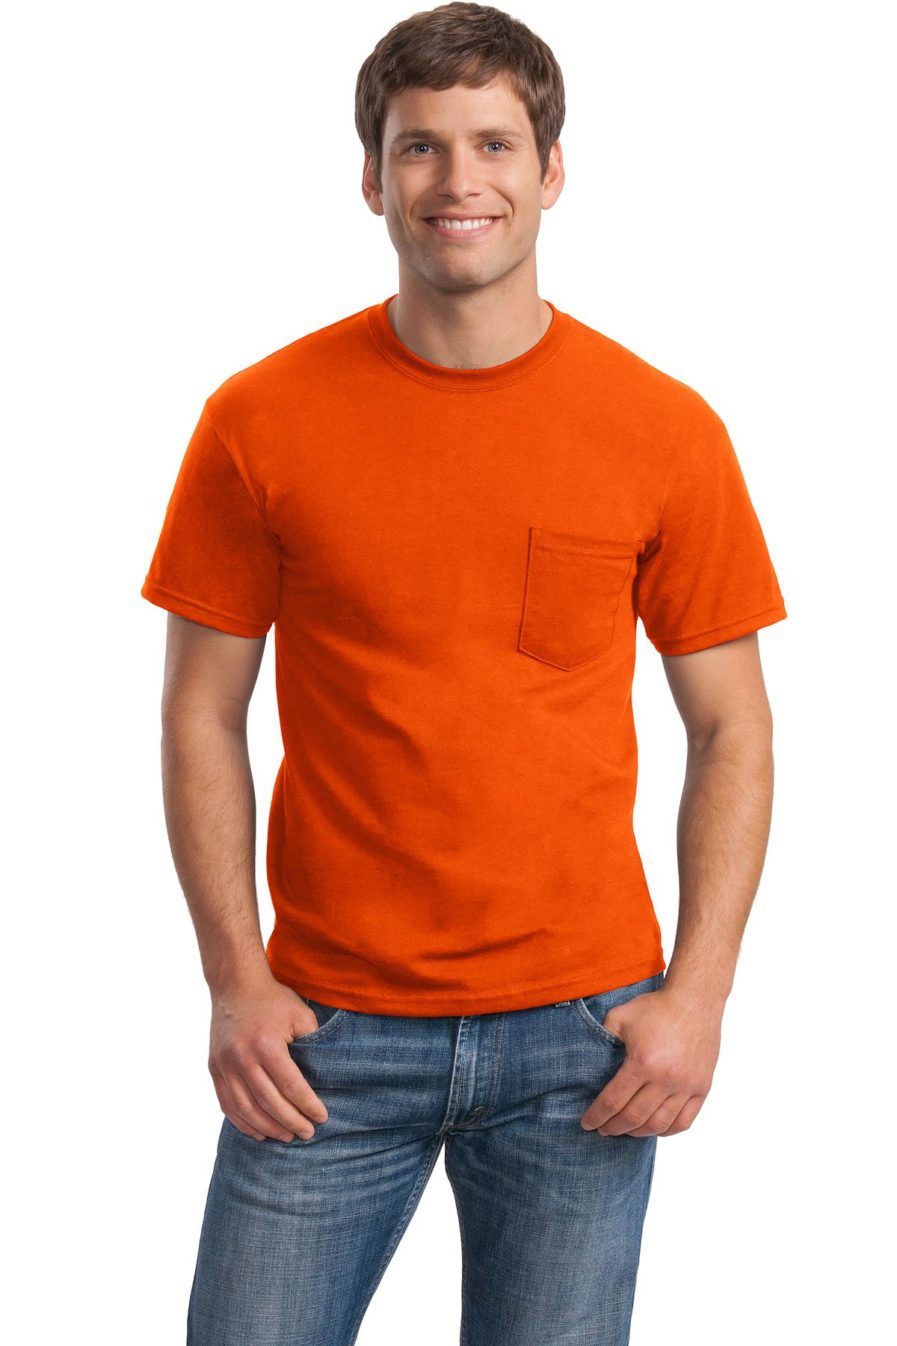 Safety Orange 50/50 gildan blend with pocket